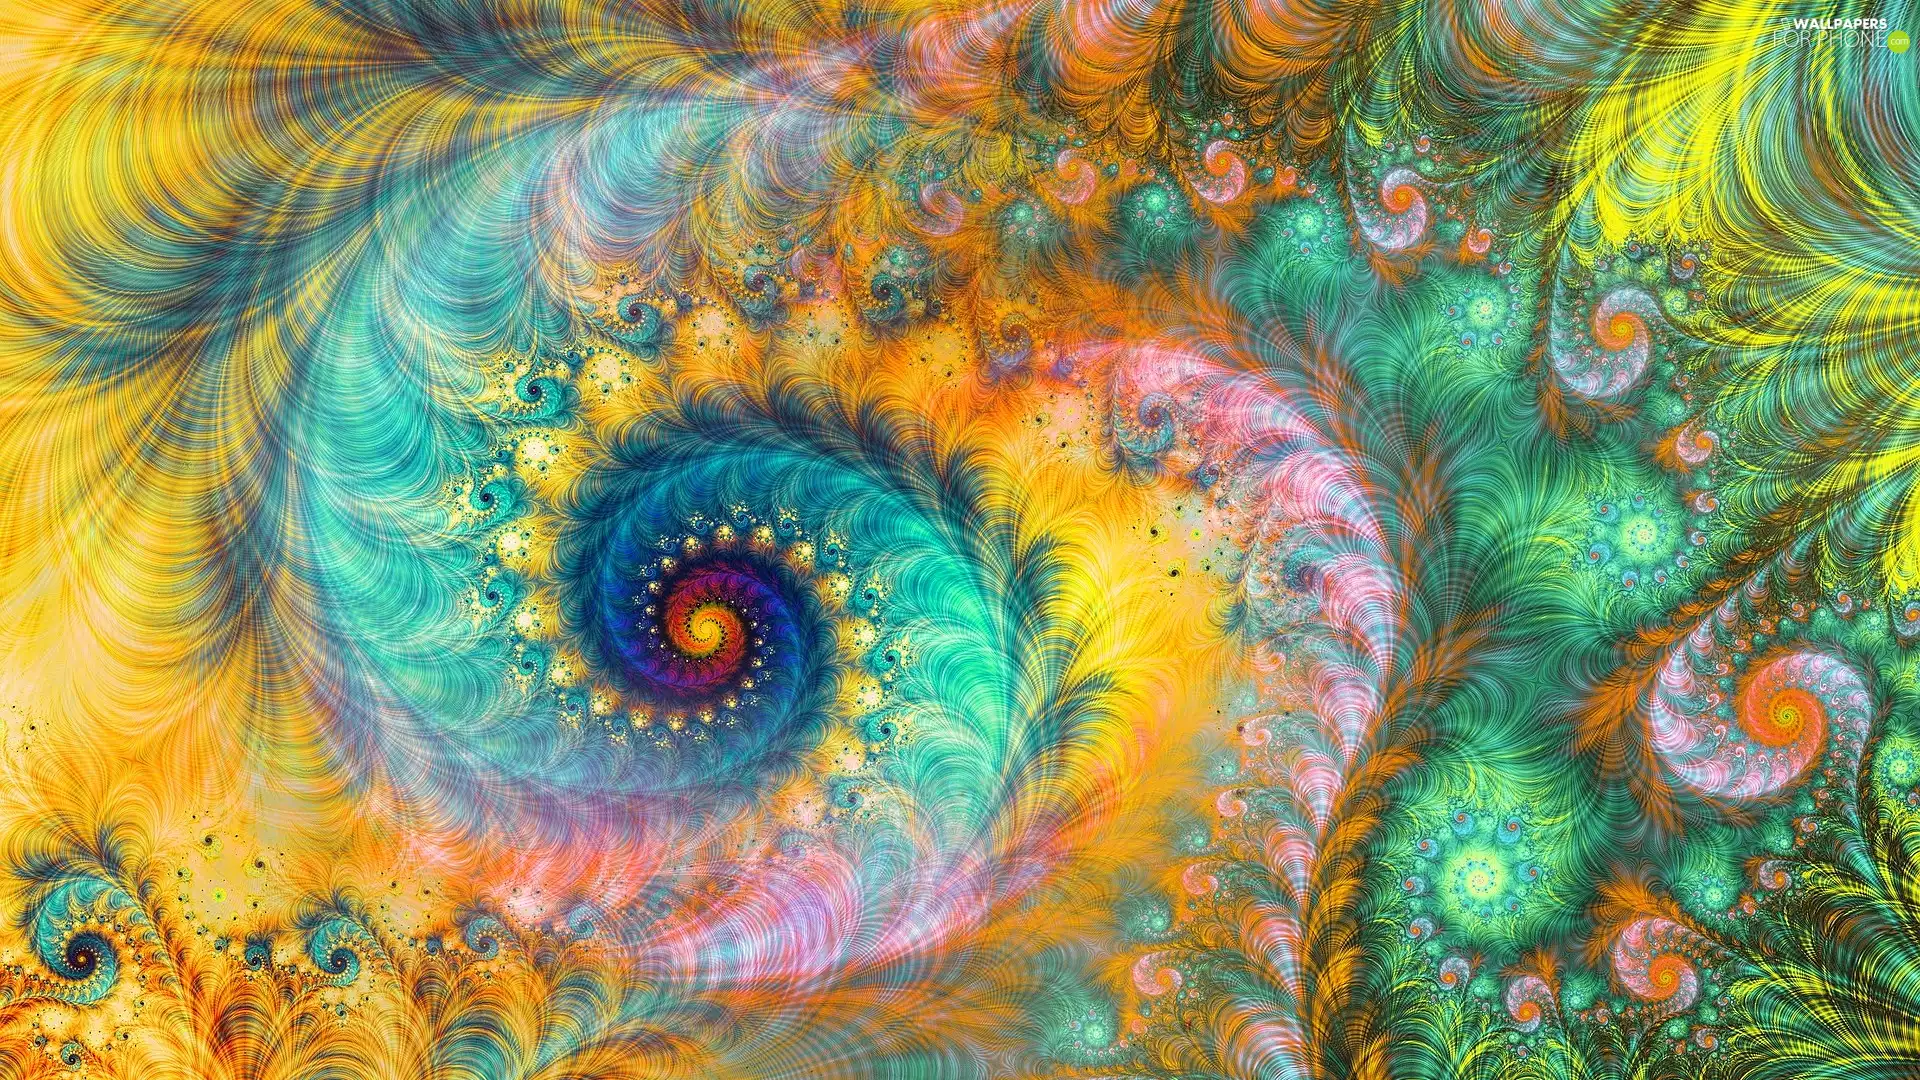 Fraktal, color, background, spiral